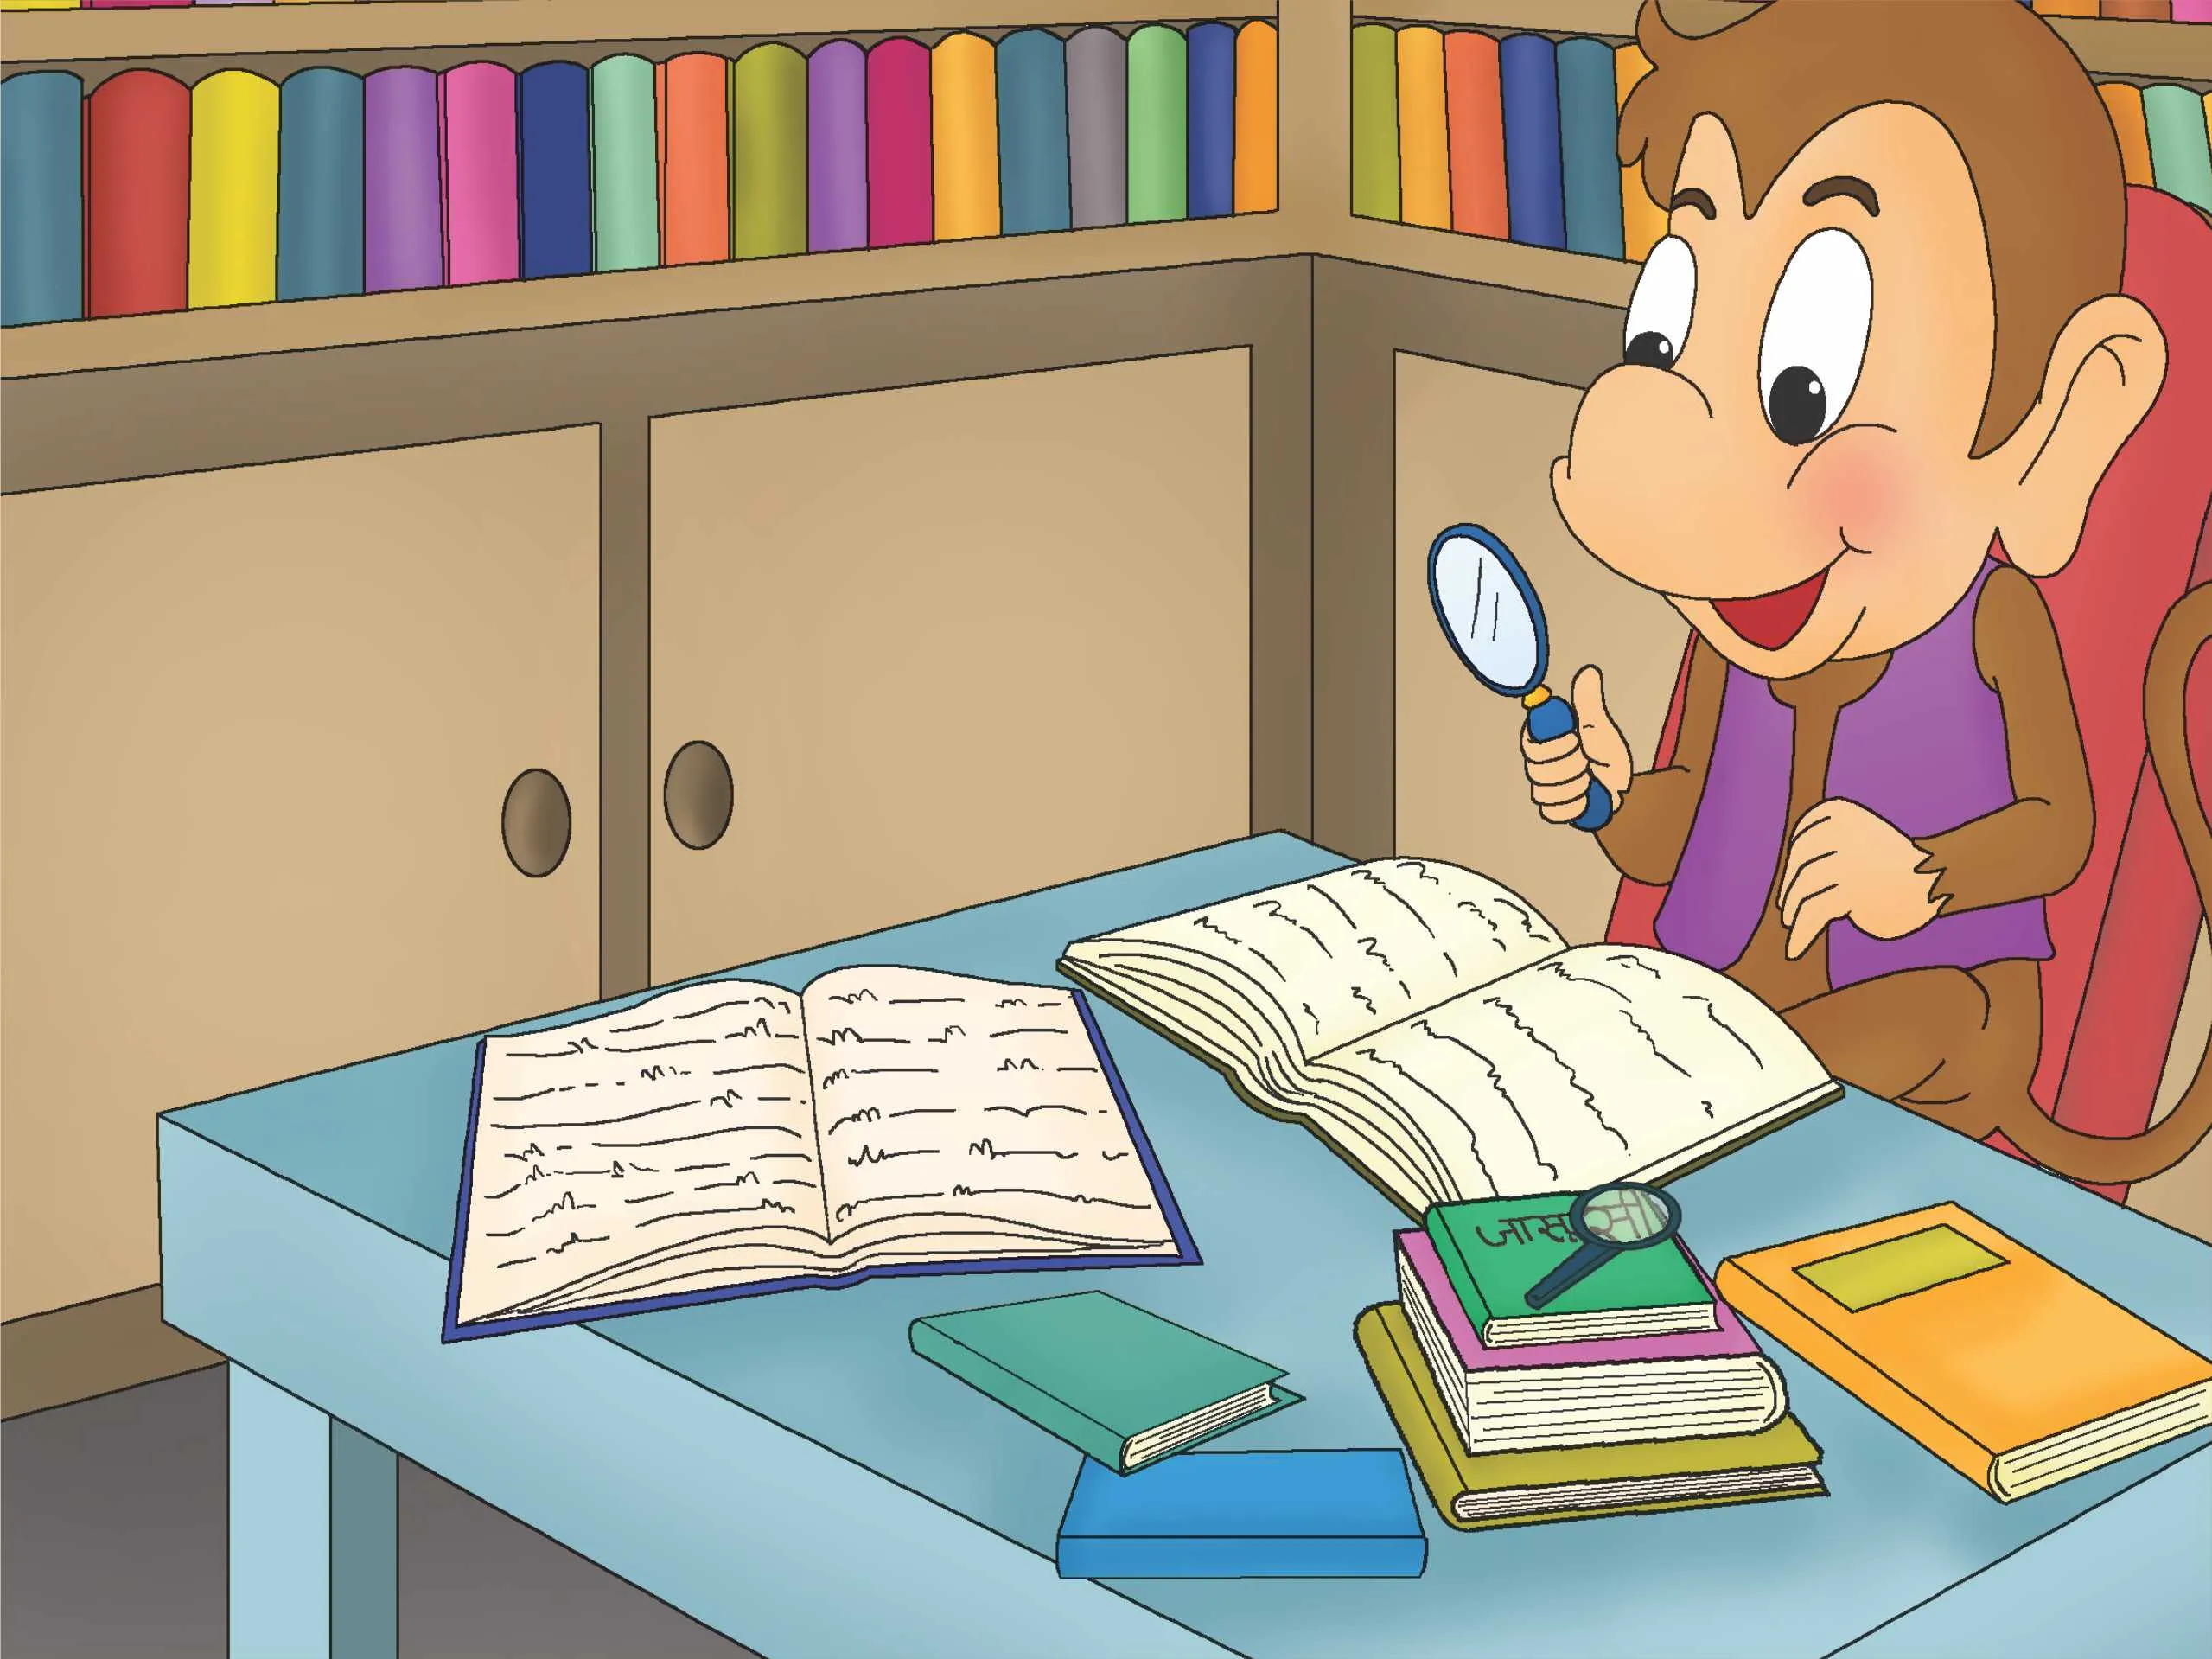 Monkey reading books cartoon image